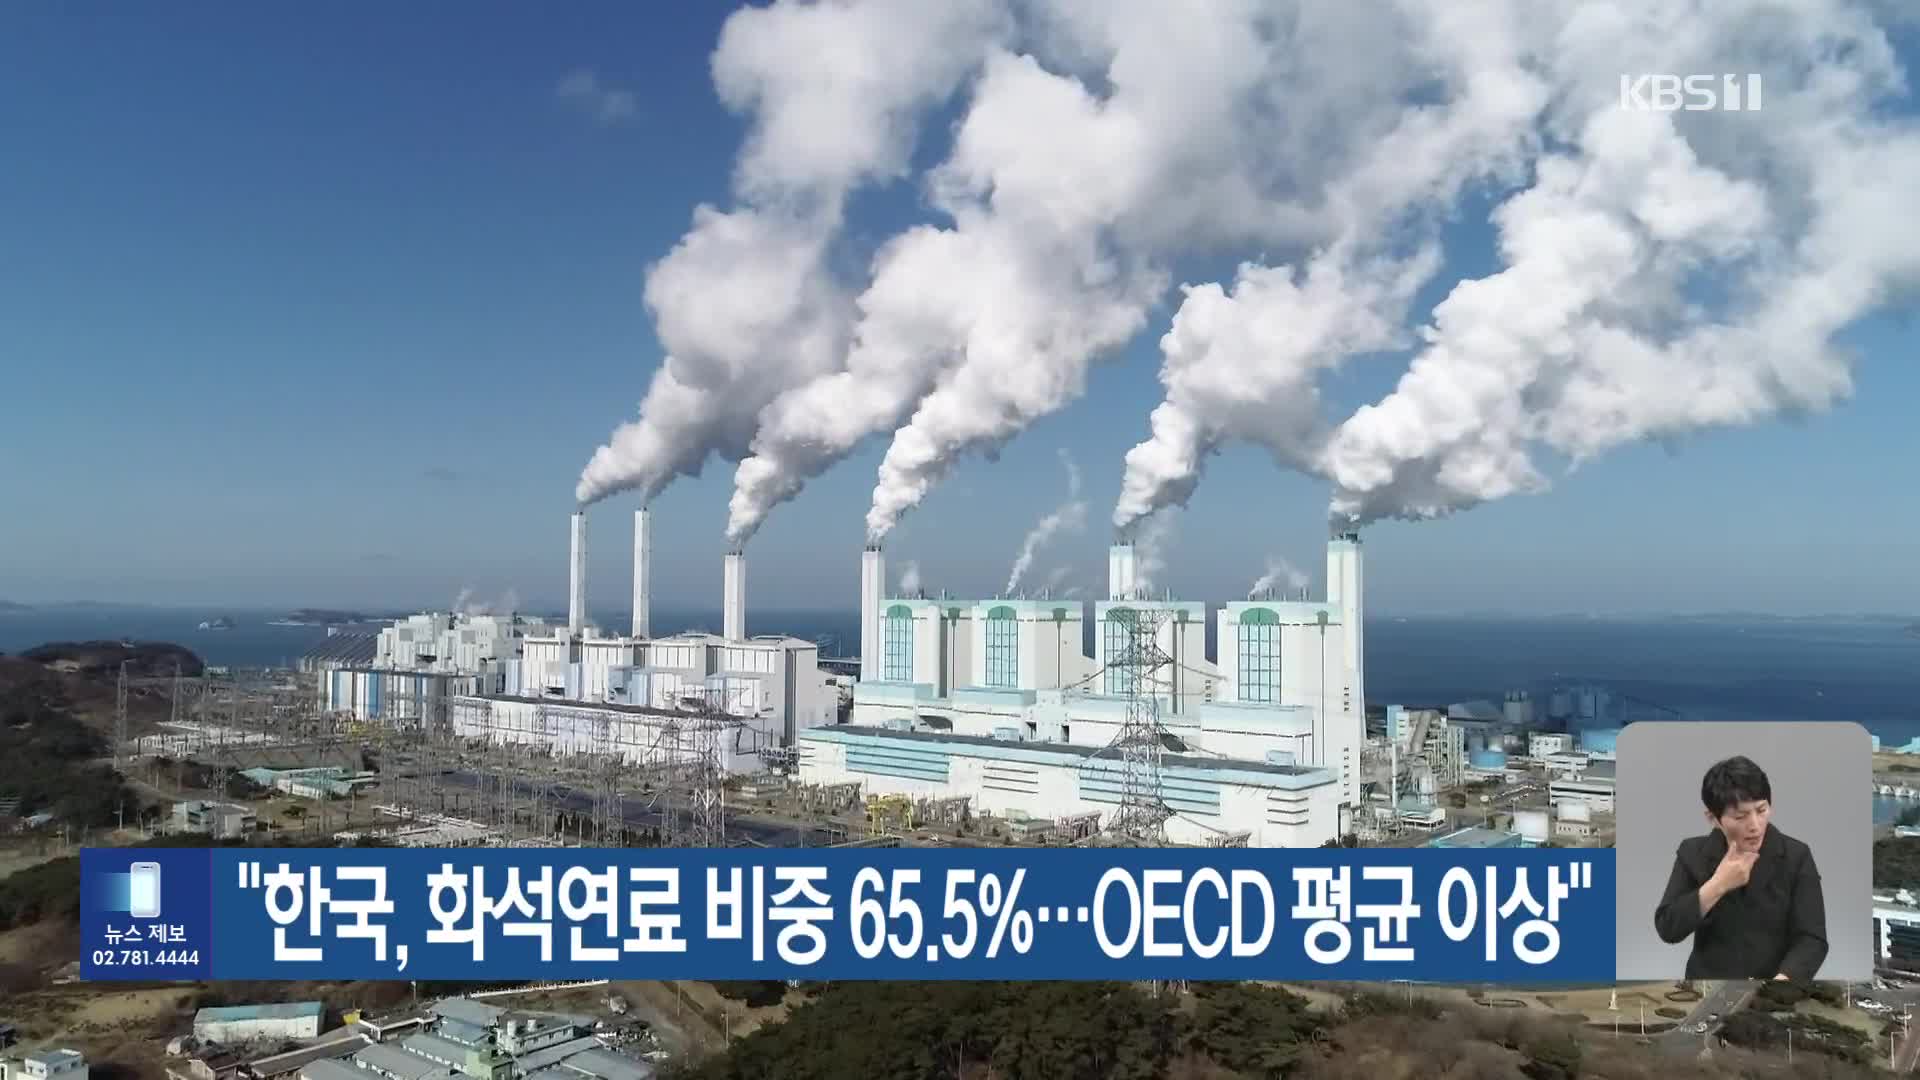 [기후는 말한다] “한국, 화석연료 비중 65.5%…OECD 평균 이상”